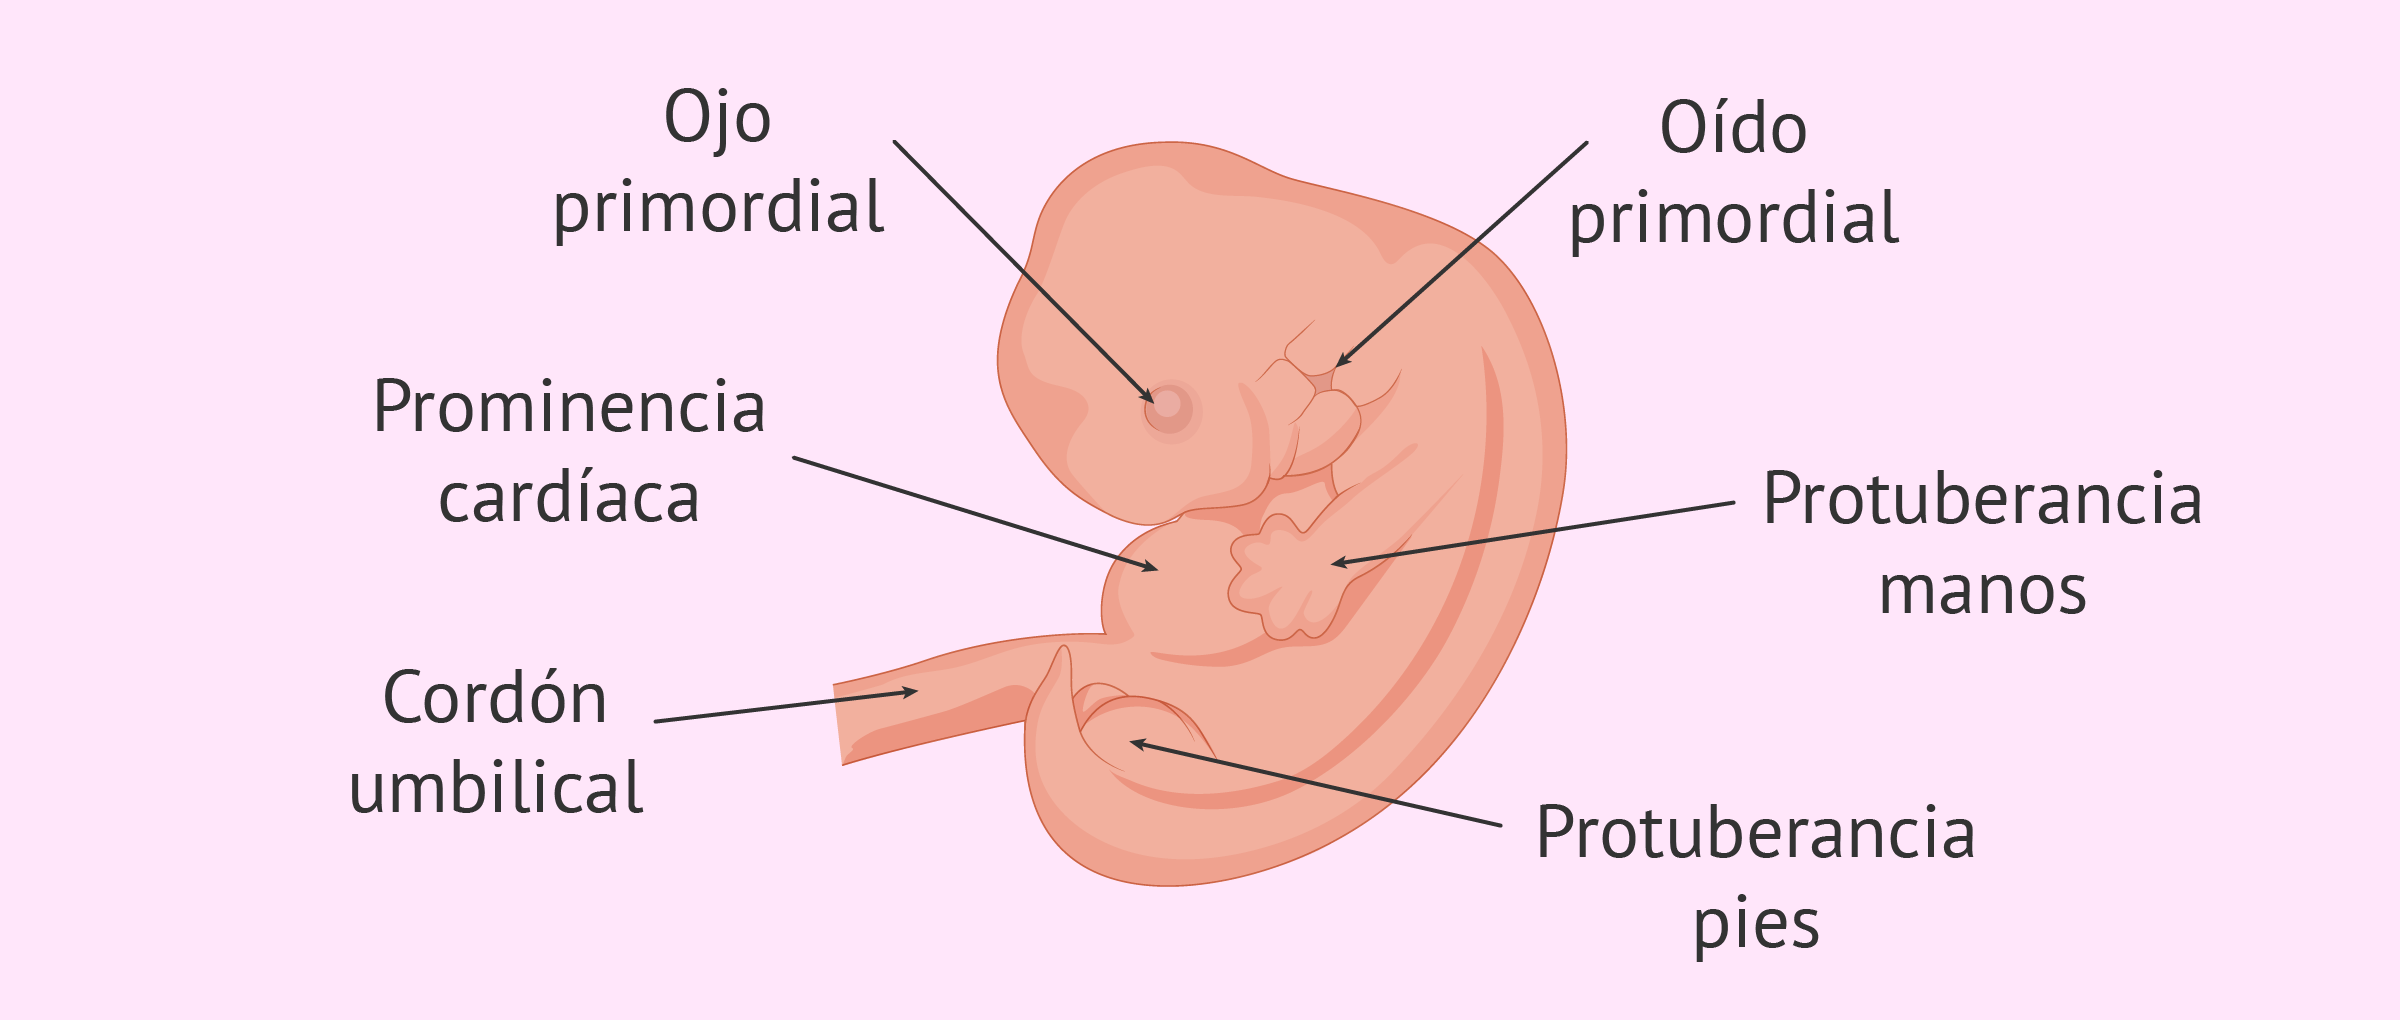 Desarrollo del embrión de 6 semanas